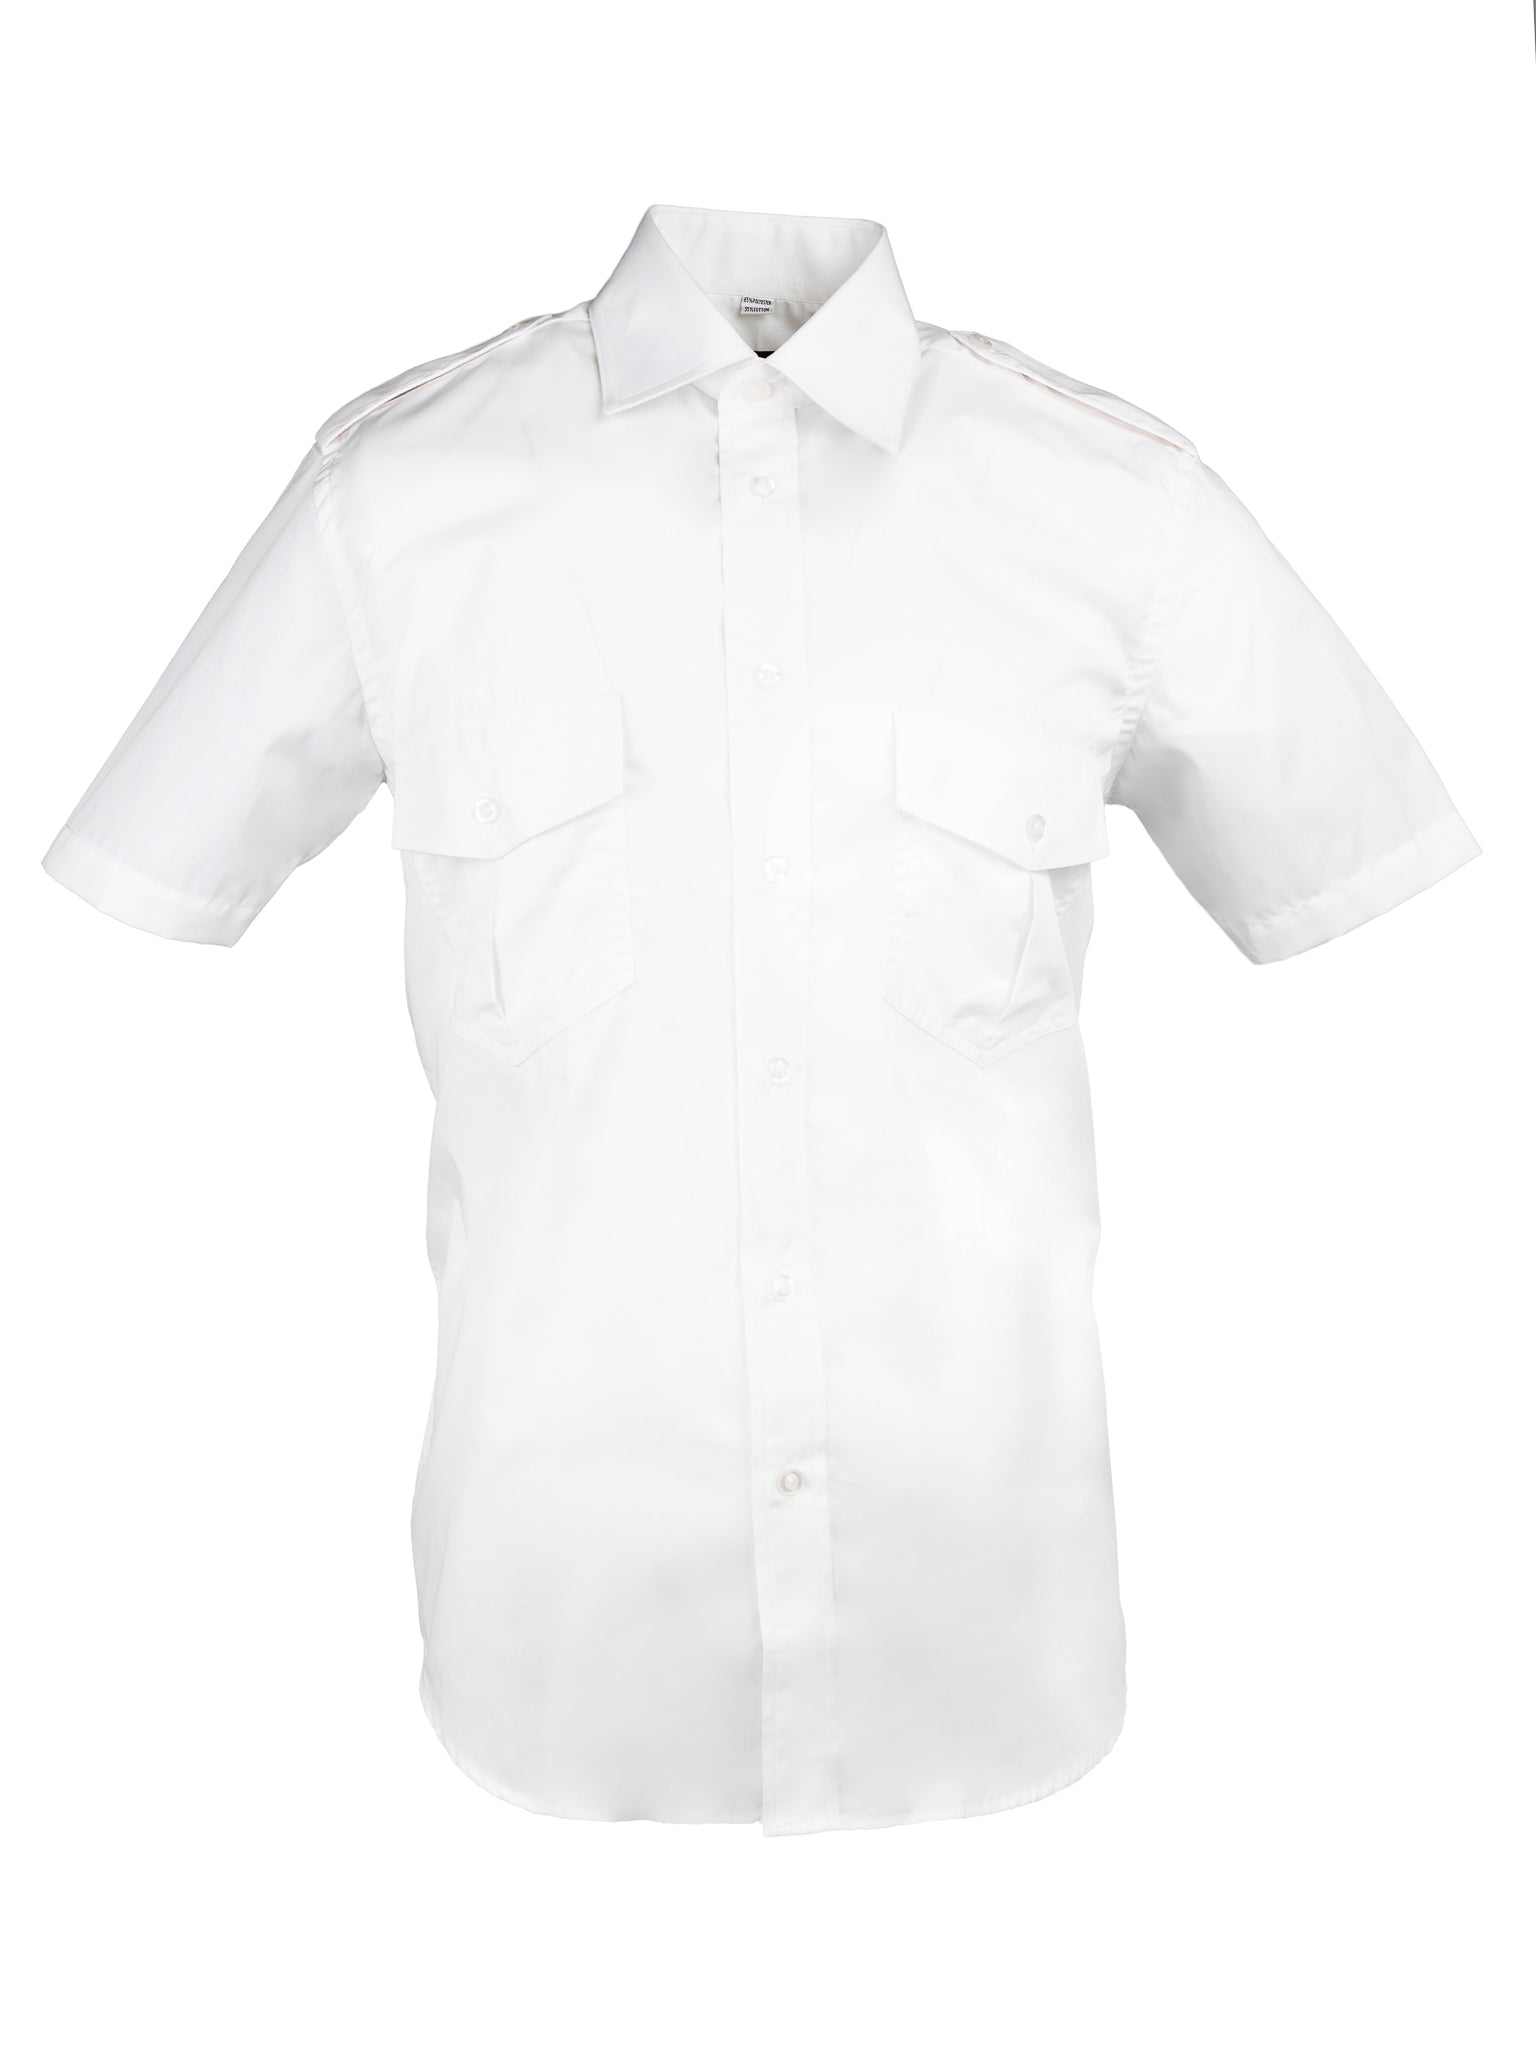 Men's Short Sleeve Epaulette Shirt